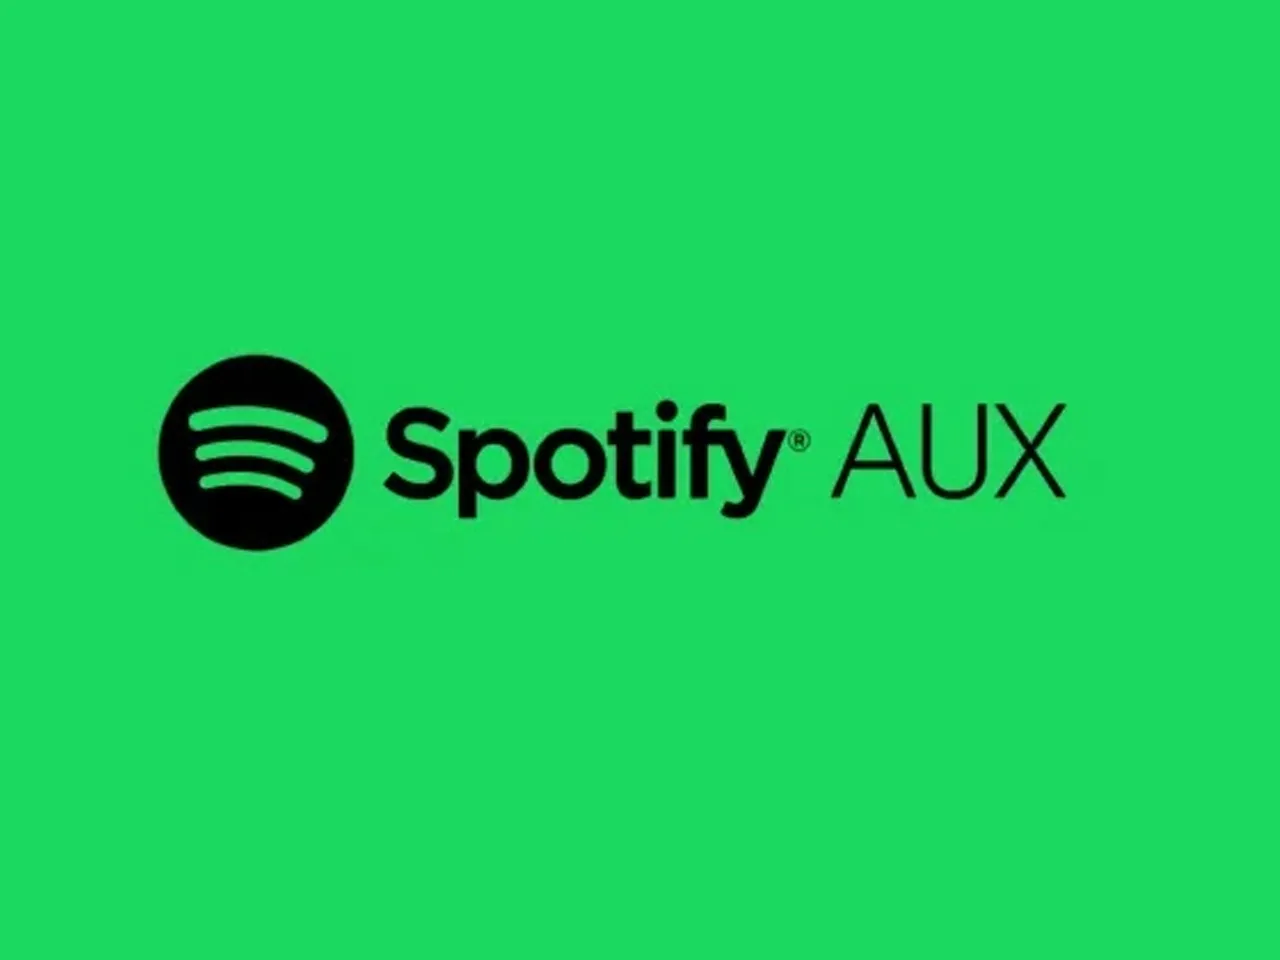 Spotify AUX